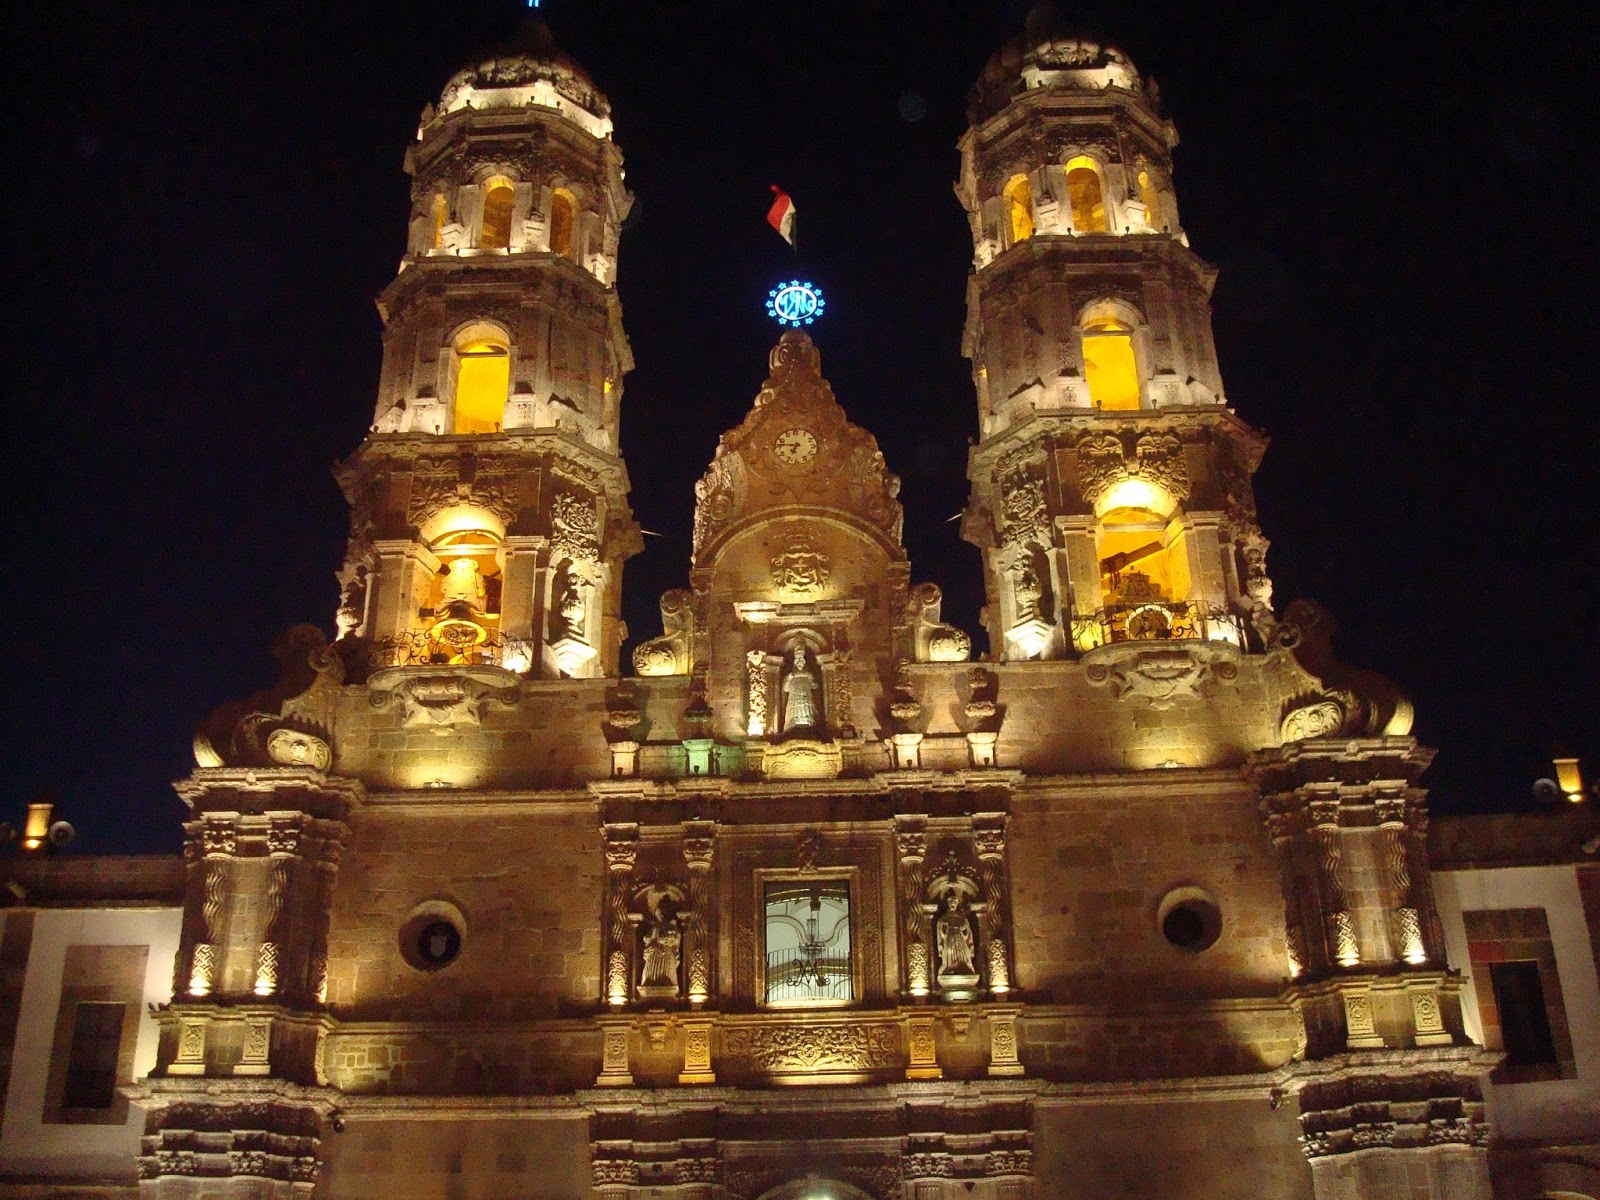 sancarlosfortin: basilica de zapopan en jalisco mexico